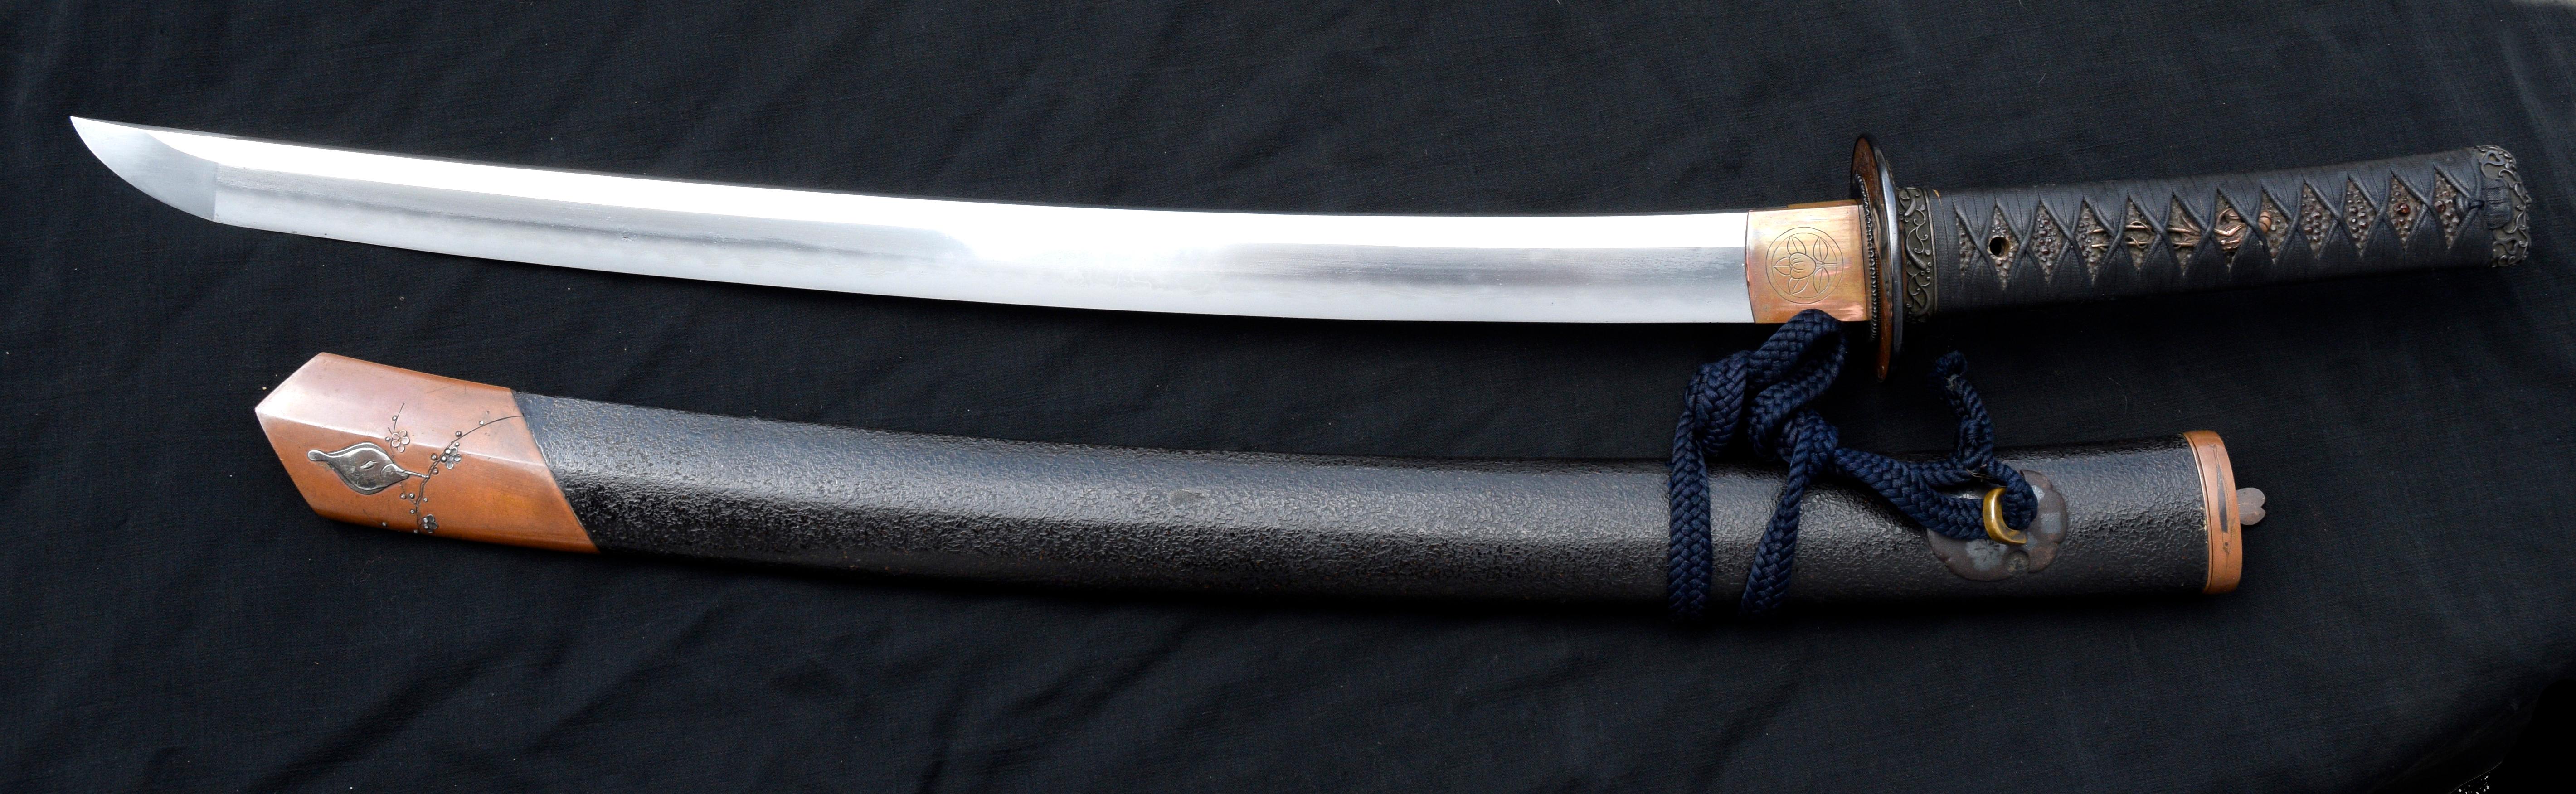 Hervorragendes und kostbares Samurai Wakizashi Schwert mit hochwertigen Beschlägen und Shirasaya. Mit Wappen des Hikone-Tachibana (Ii-Clan) auf dem Habaki (Schwertkragen) (Die Ii wurden unter Tokugawa Ieyasu dank Ii Naomasa:: einem der vier